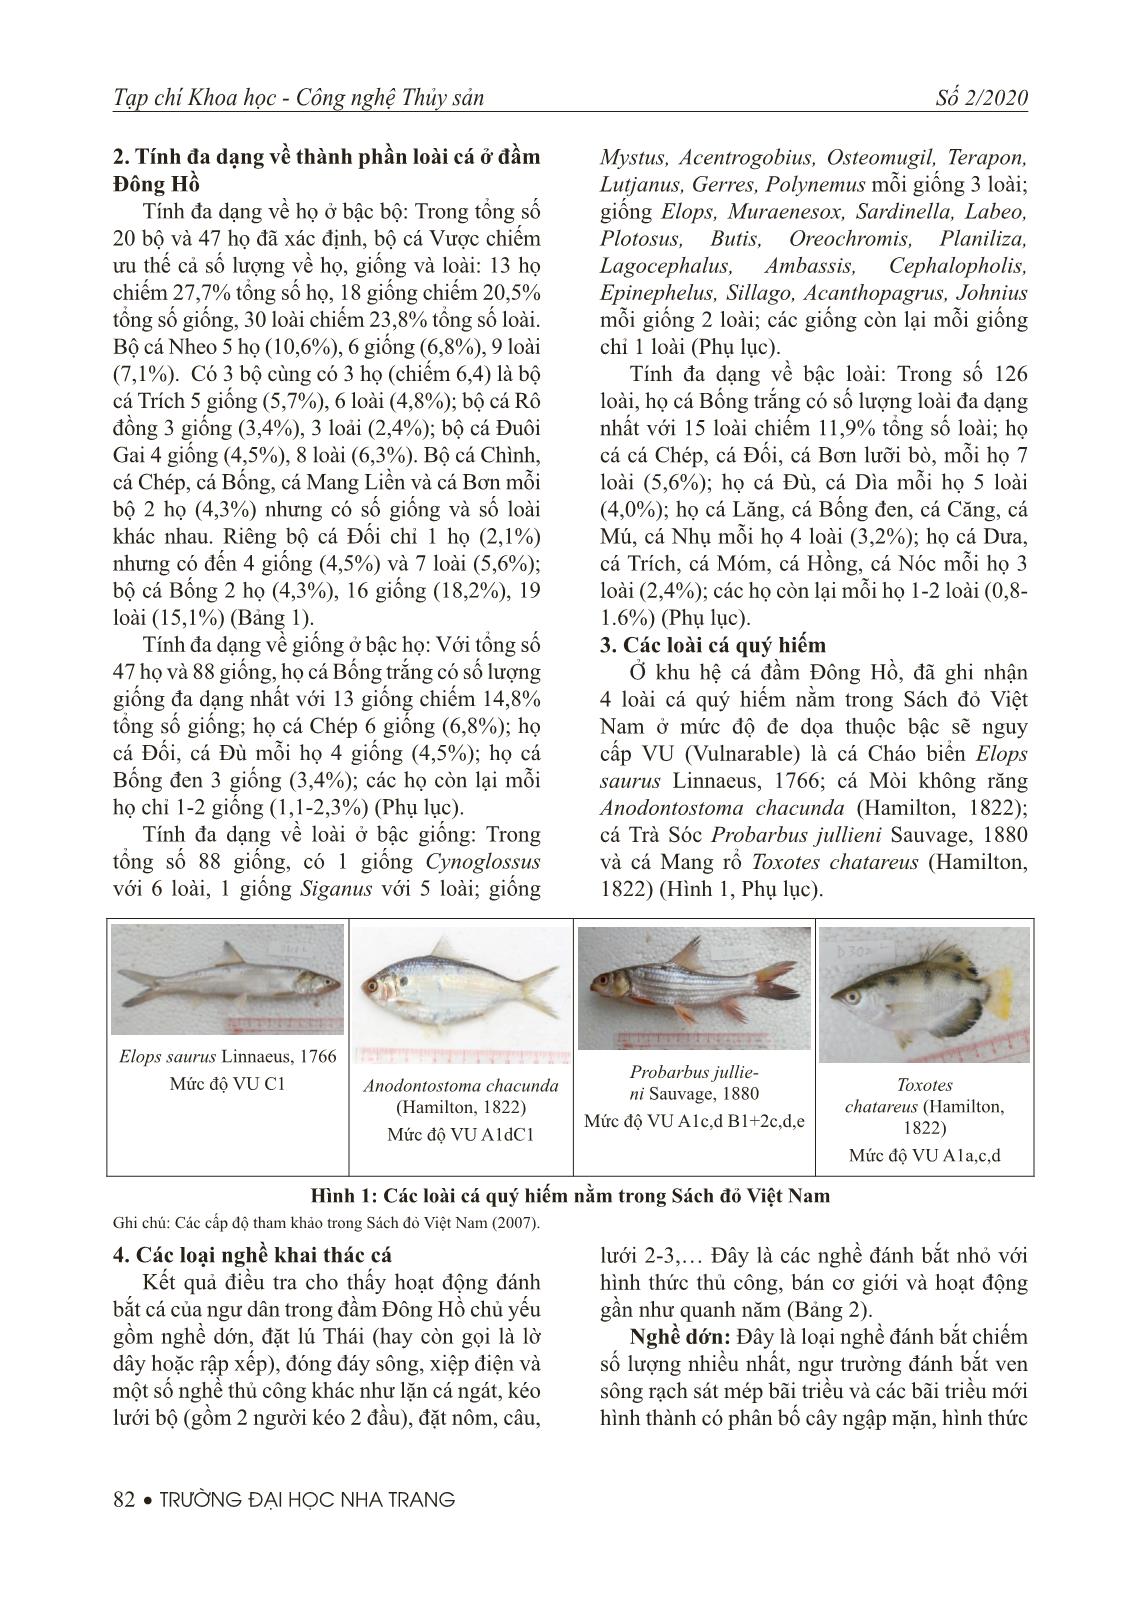 Thành phần loài và các loại nghề khai thác cá ở đầm Đông Hồ, Hà Tiên tỉnh Kiên Giang trang 4